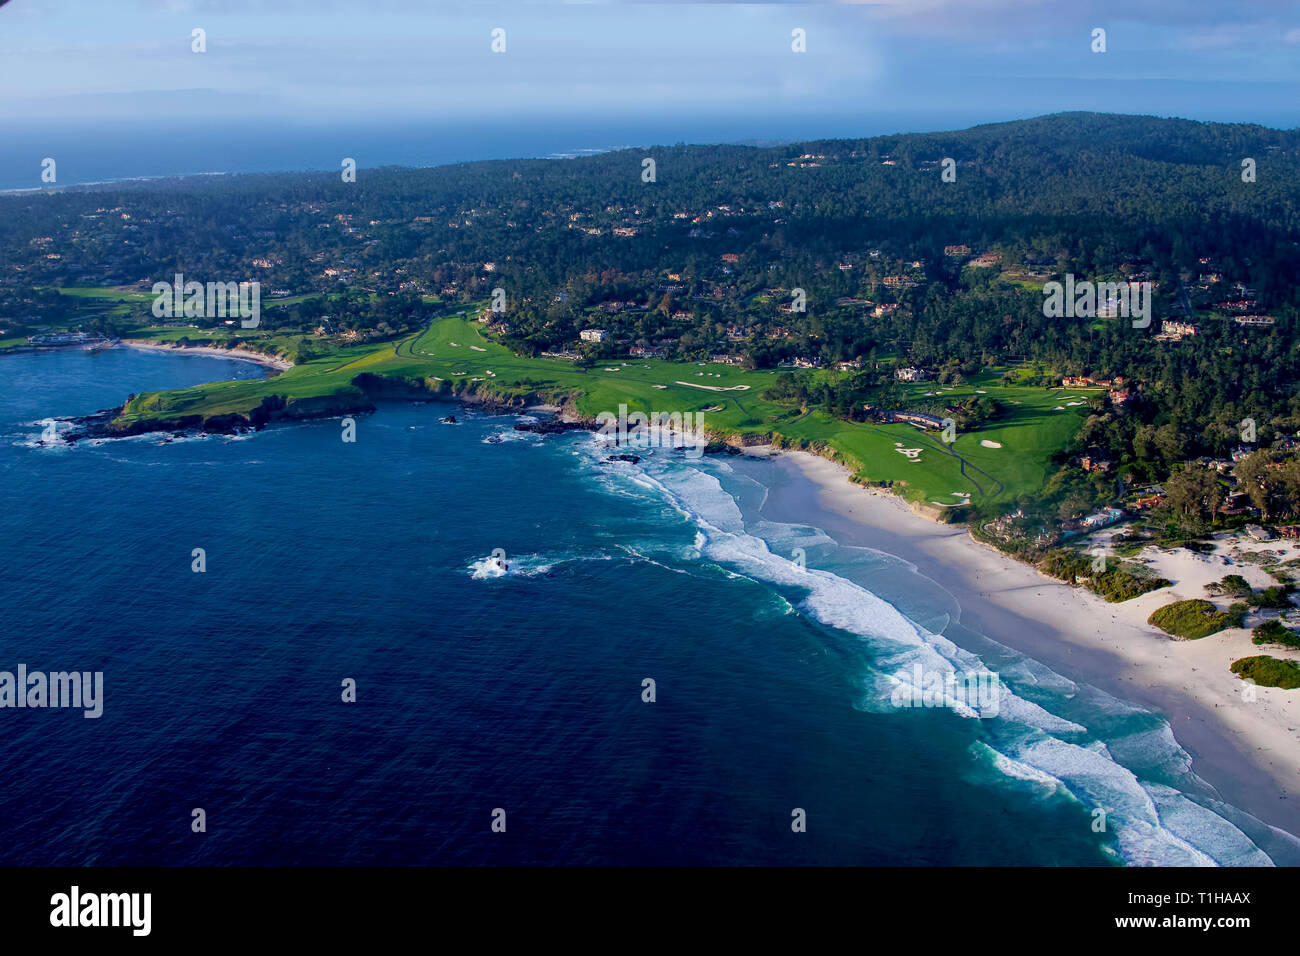 21 März, 2019 Pebble Beach, Kalifornien, USA, Luftbild über die legendären Pebble Beach Golf lLinks - Schauplatz für die 2019 US Open Golf Championship als Stockfoto